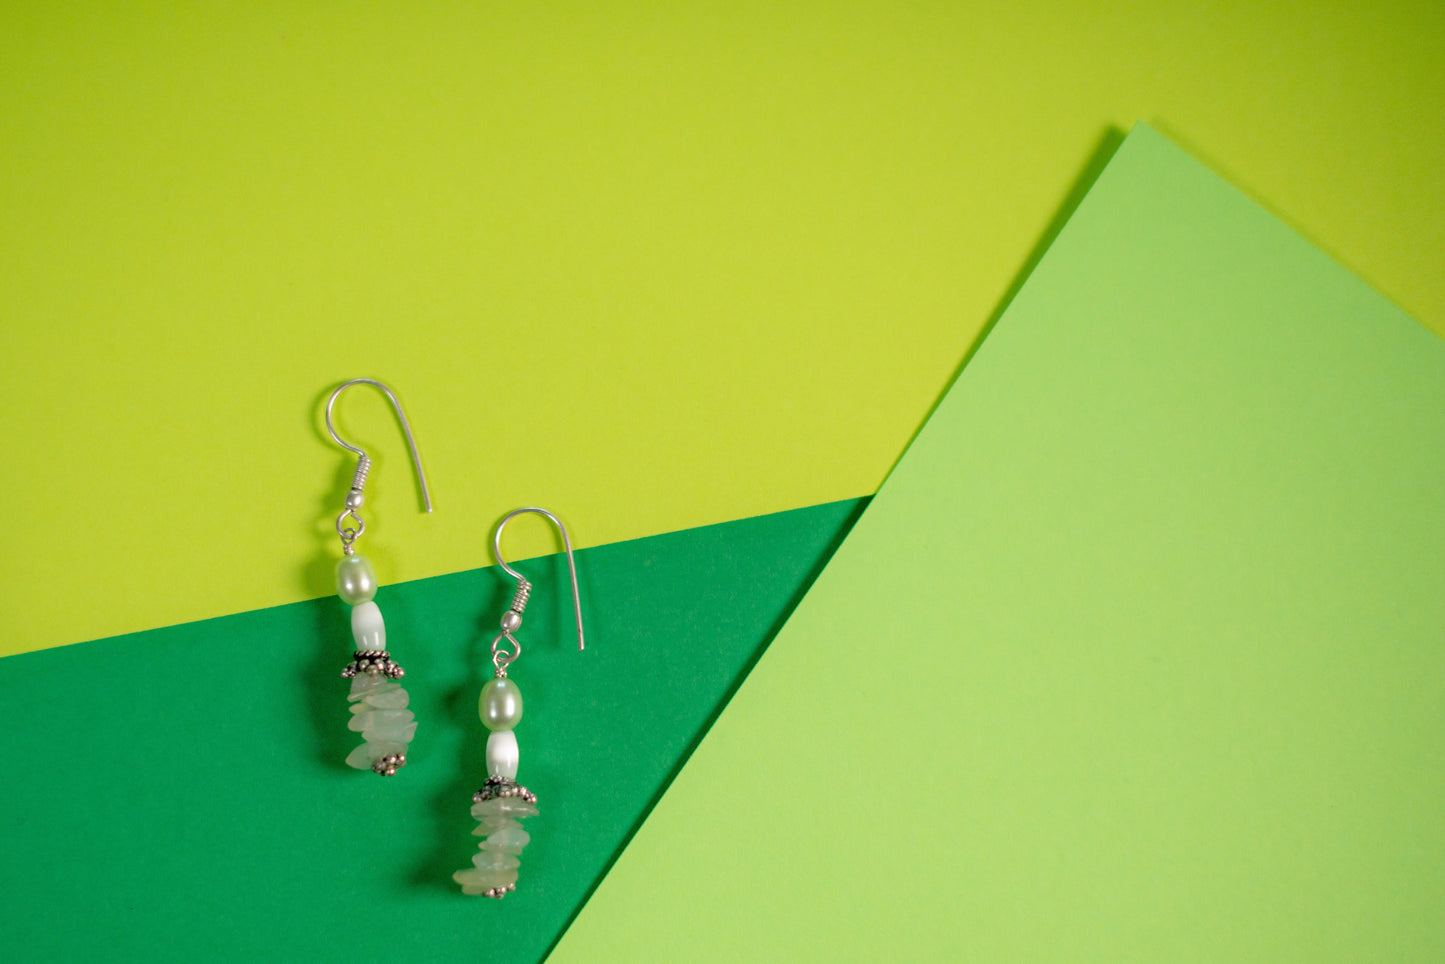 Green & White Blended Bead Necklace/Bracelet/Earring Set